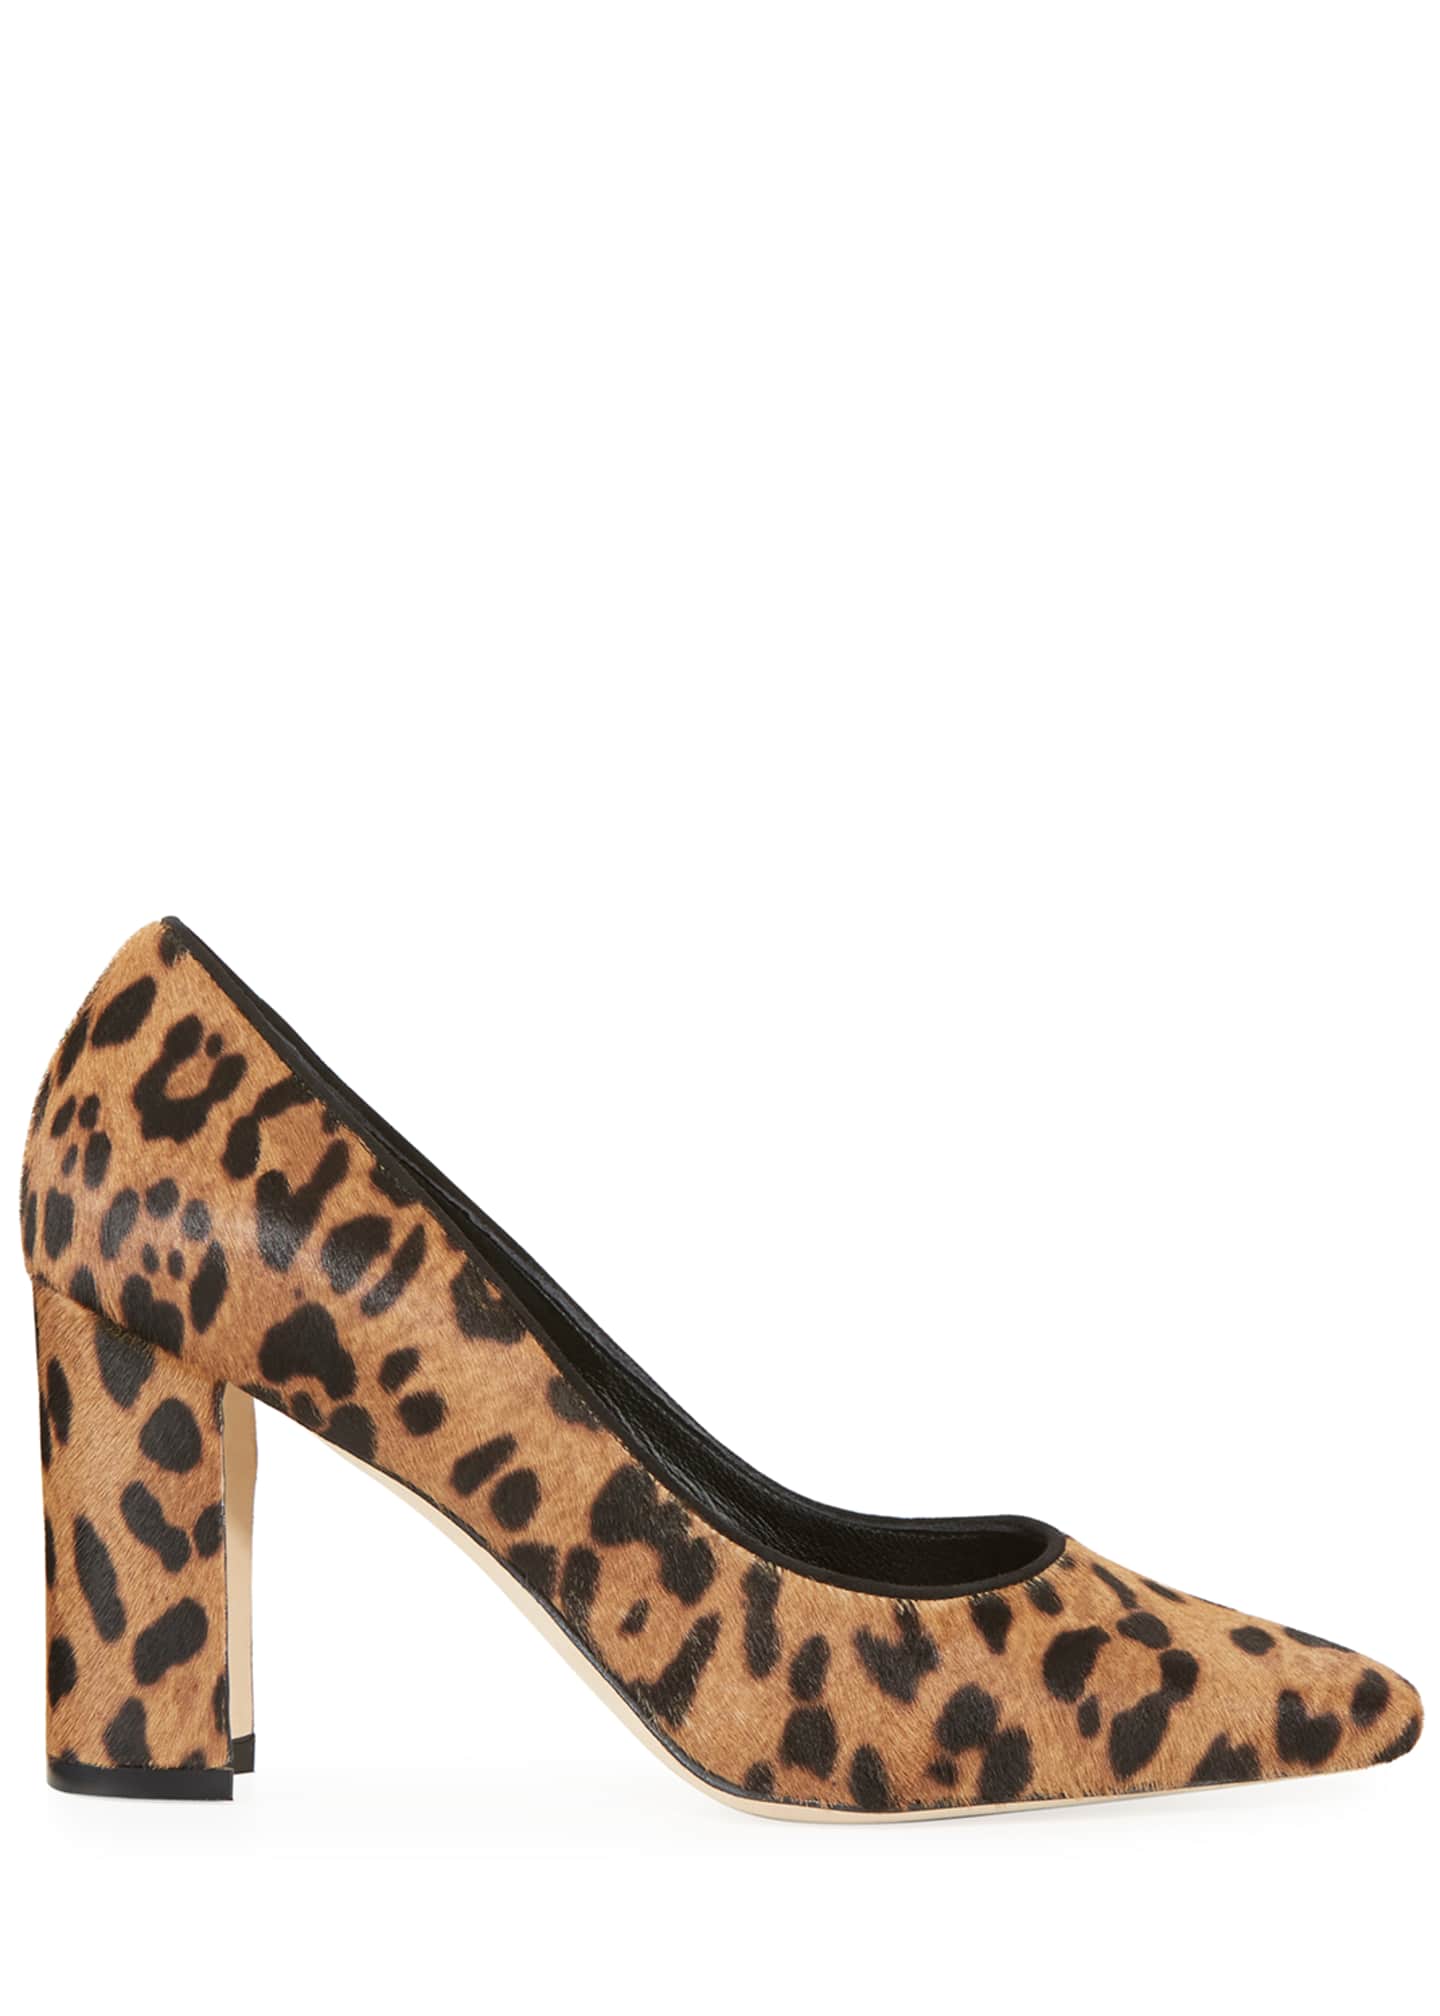 manolo blahnik leopard print shoes